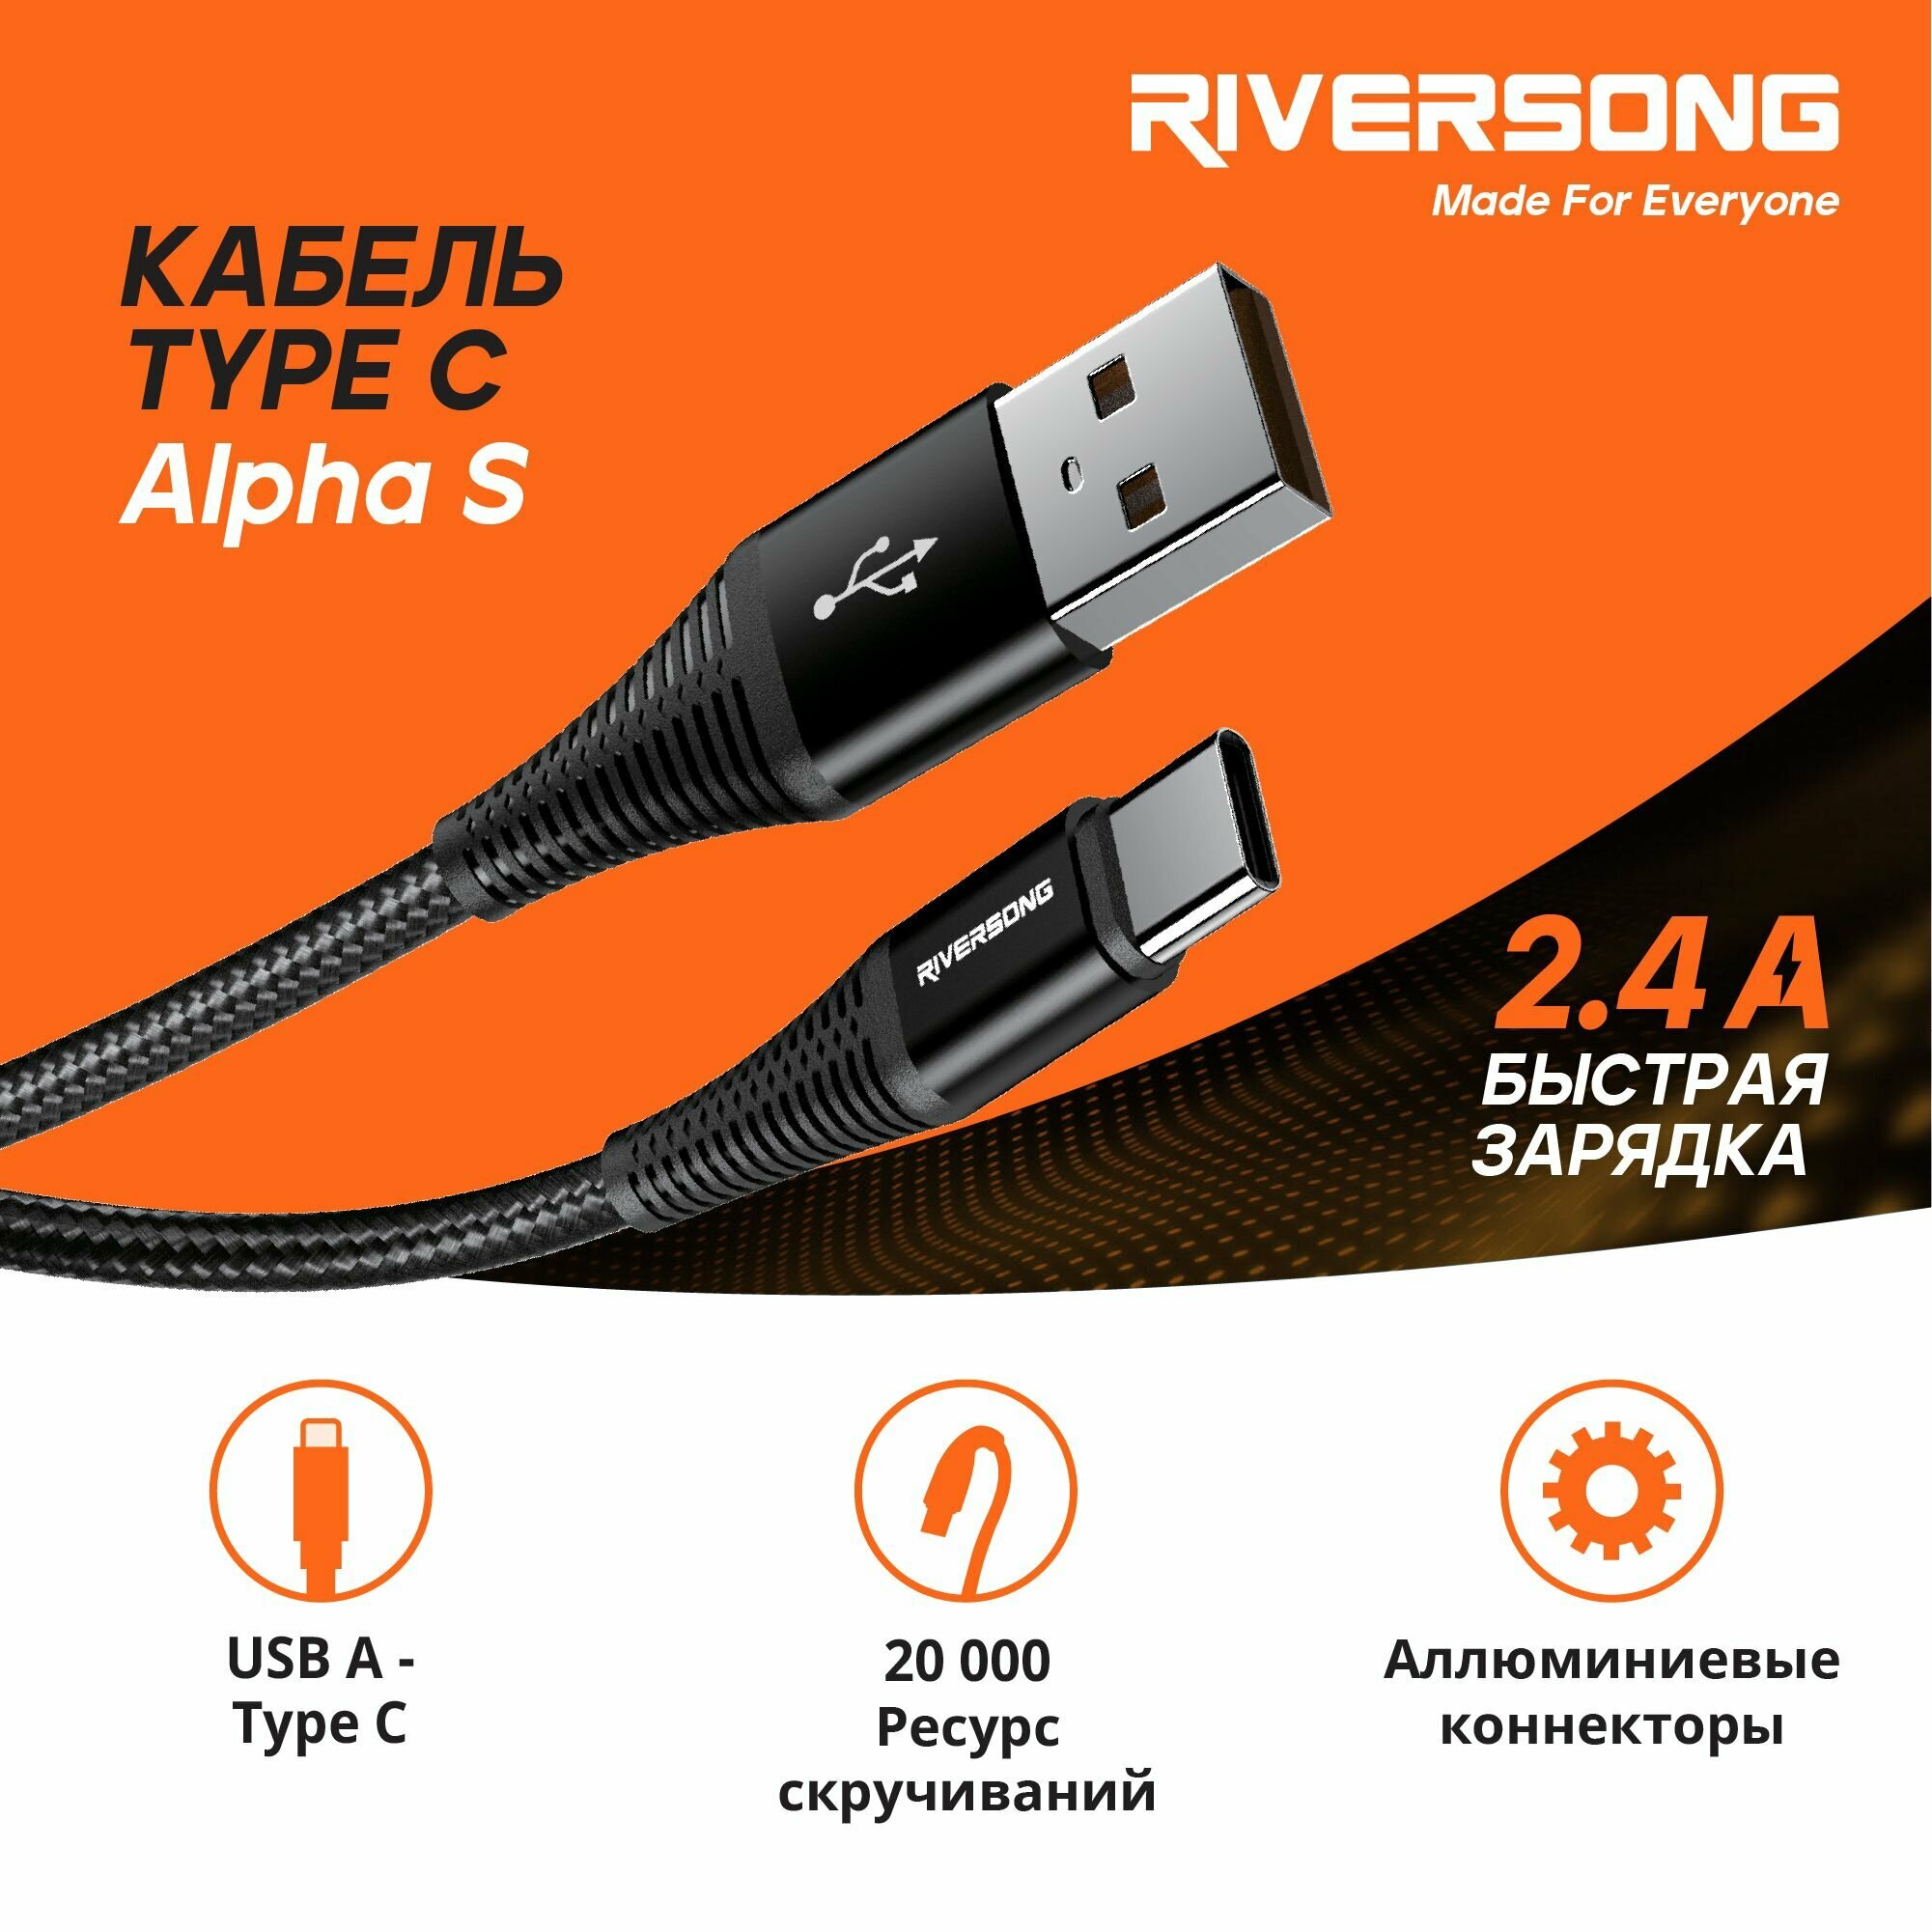 Кабель USB A - Type C / 1 метр Быстрая зарядка Type C для телефона / Кабель для зарядки телефона / Провод Type C / Riversong Alpha S 2.4А USB 2.0 цвет черный